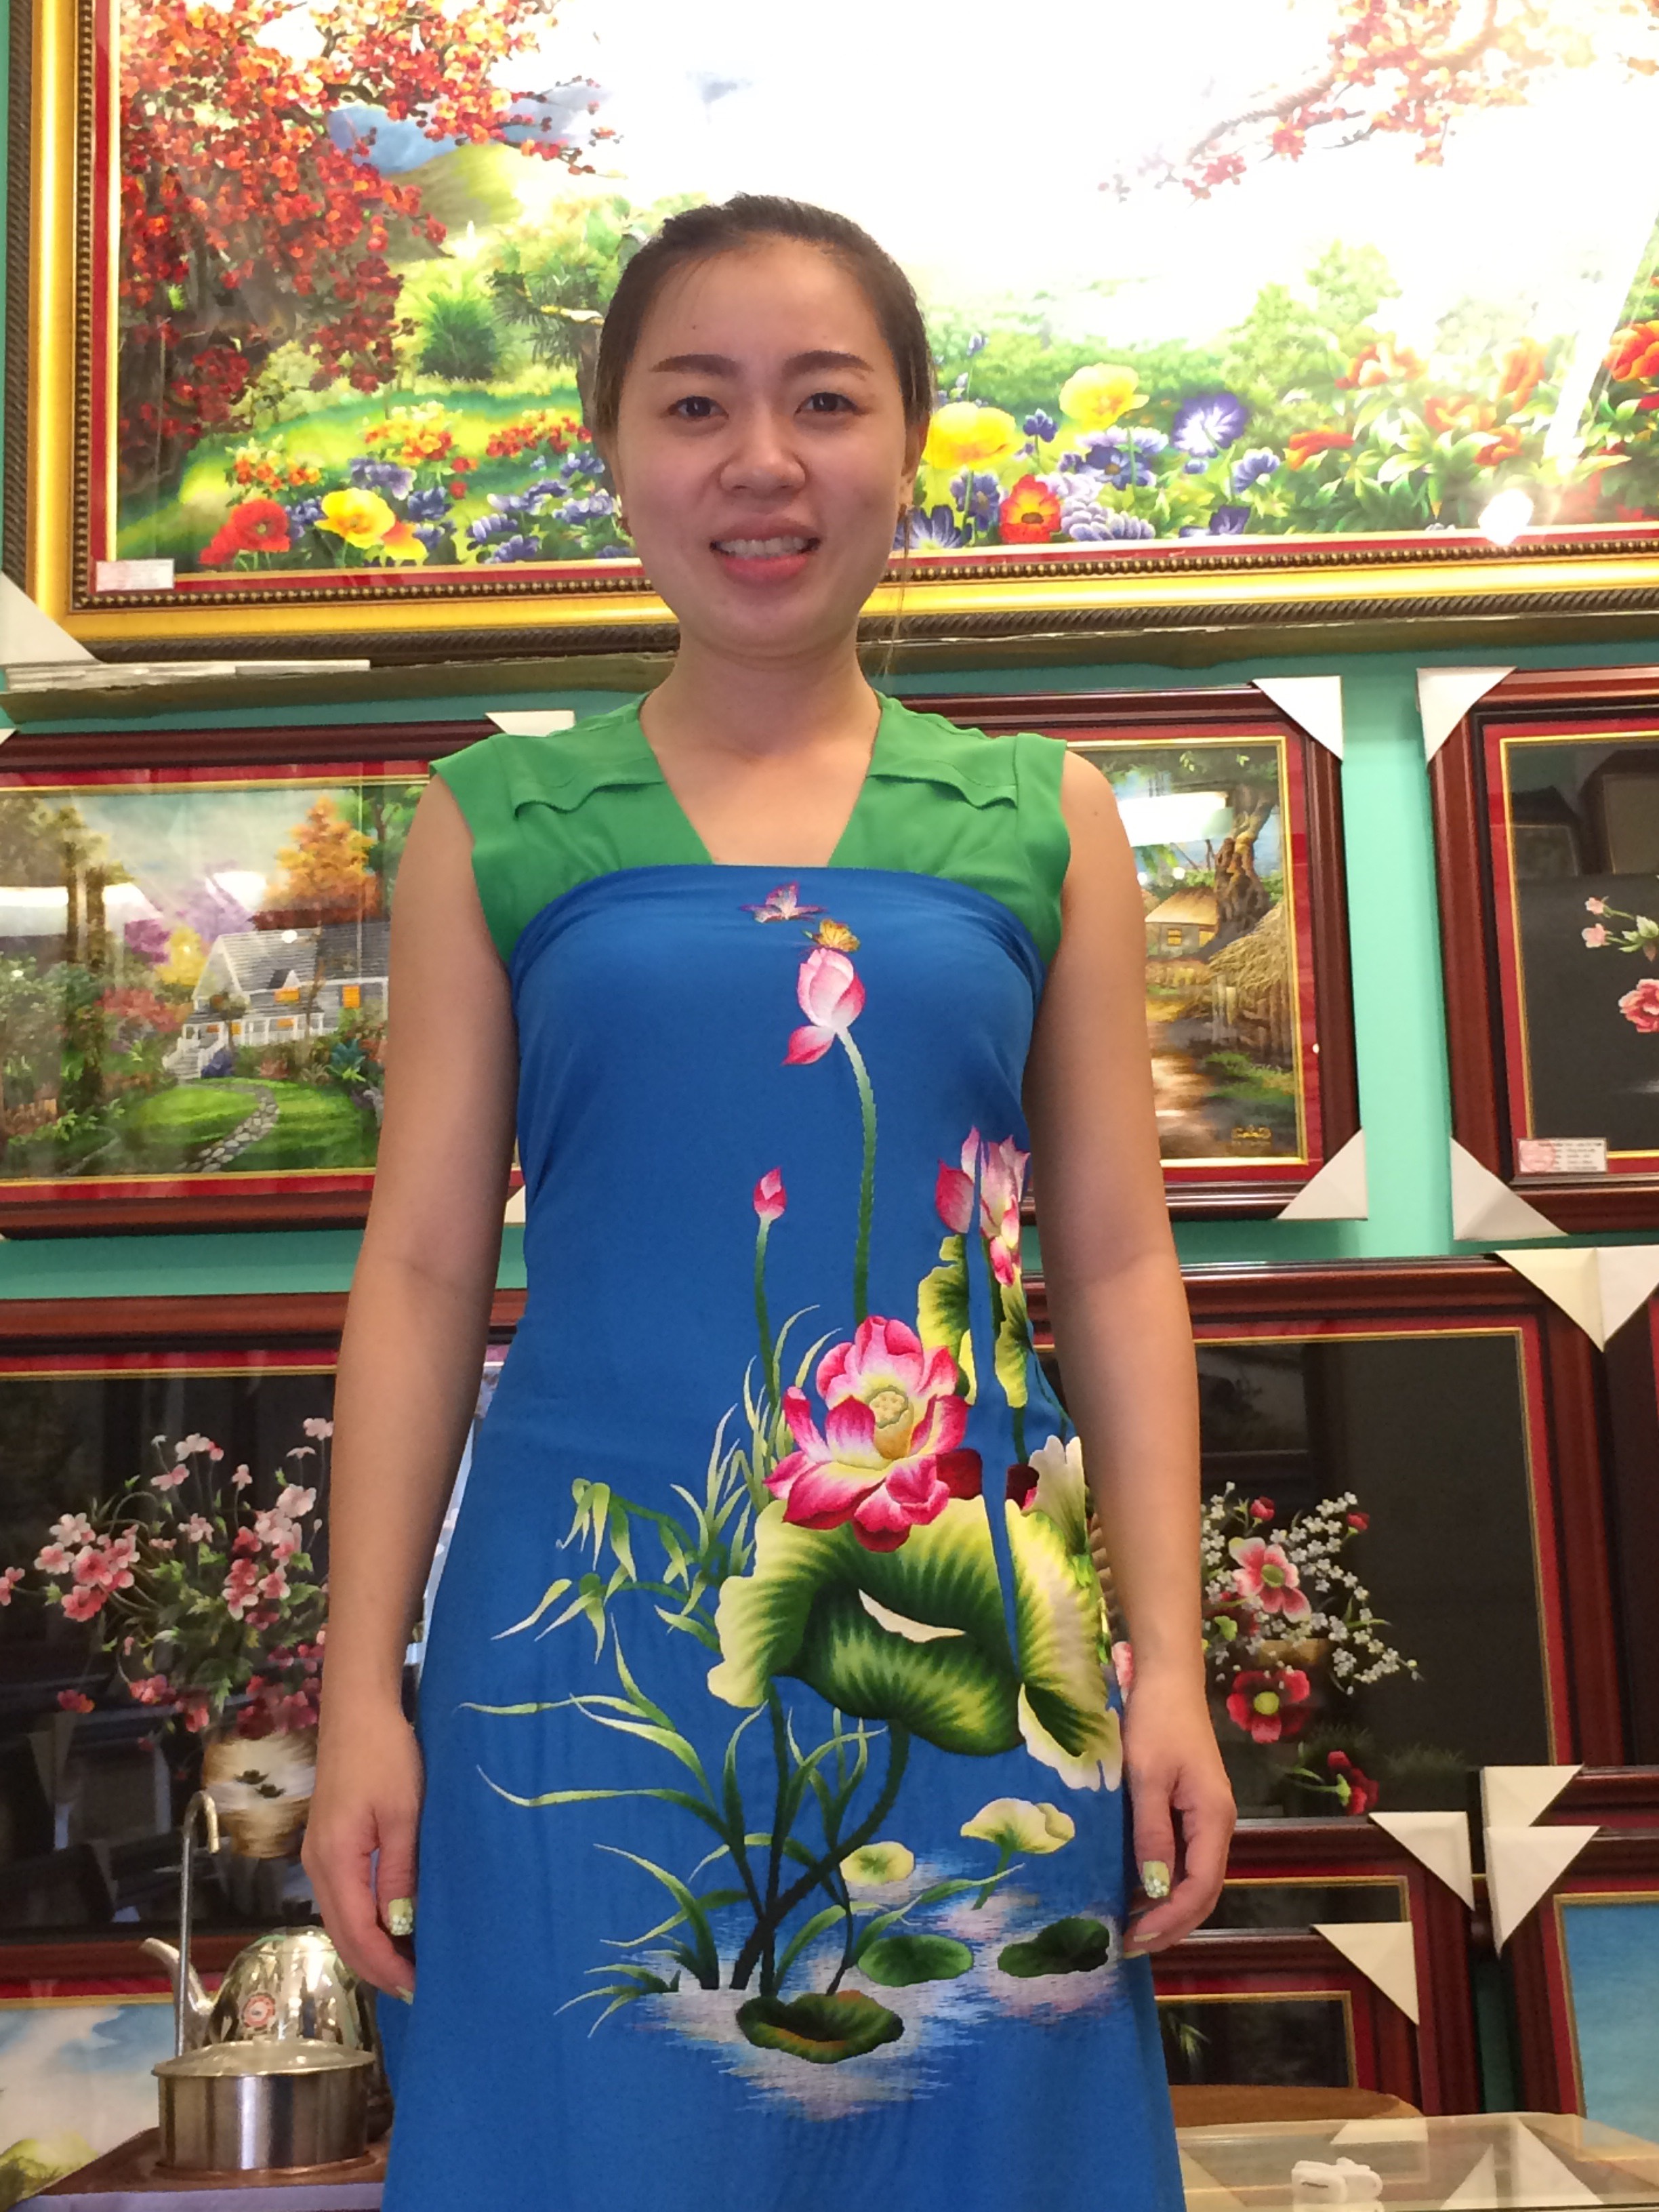 Hoa sen luôn được chiêm ngưỡng là một biểu tượng đặc biệt của văn hóa Việt Nam. Và hôm nay chúng ta sẽ cùng khám phá những mẫu thêu hoa sen (909) tuyệt đẹp và đặc sắc nhất. Hãy cảm nhận sự thanh tao và trong trẻo mà hoa sen mang lại qua những họa tiết thêu tay tuyệt vời này.